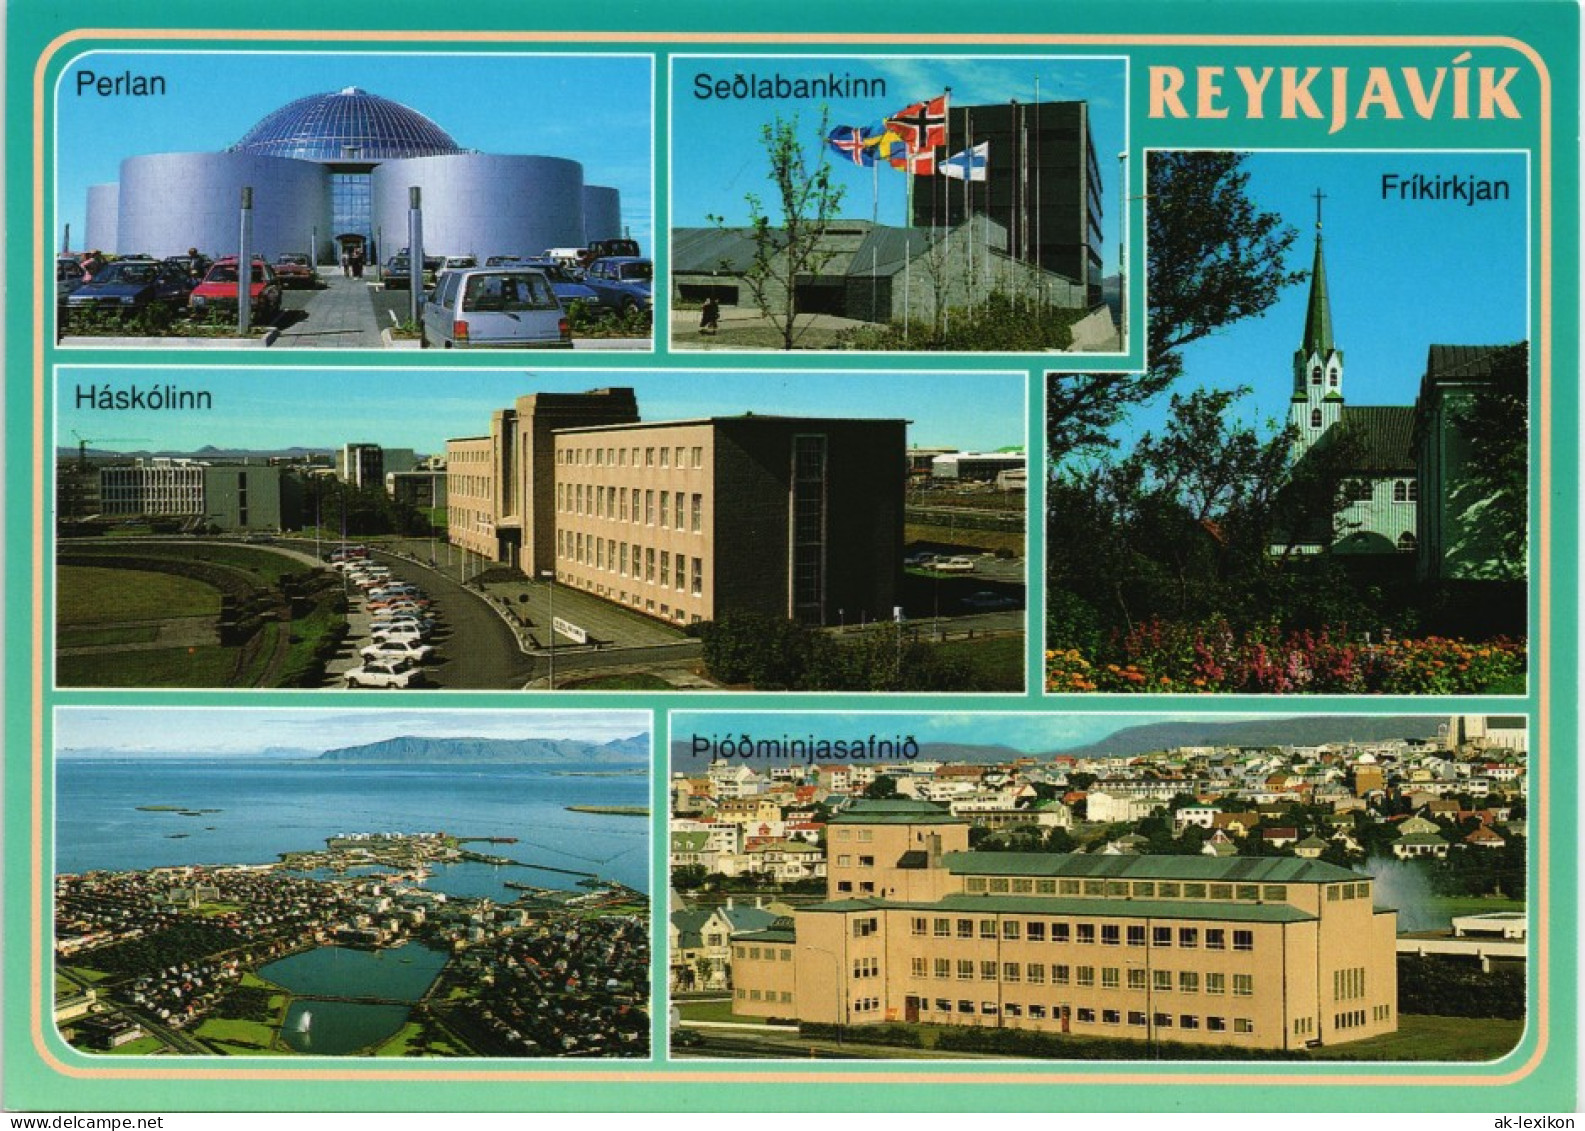 Reykjavík  Central Bank, Perlan Restaurant Uvm. Iceland Postcard 2000 - Iceland